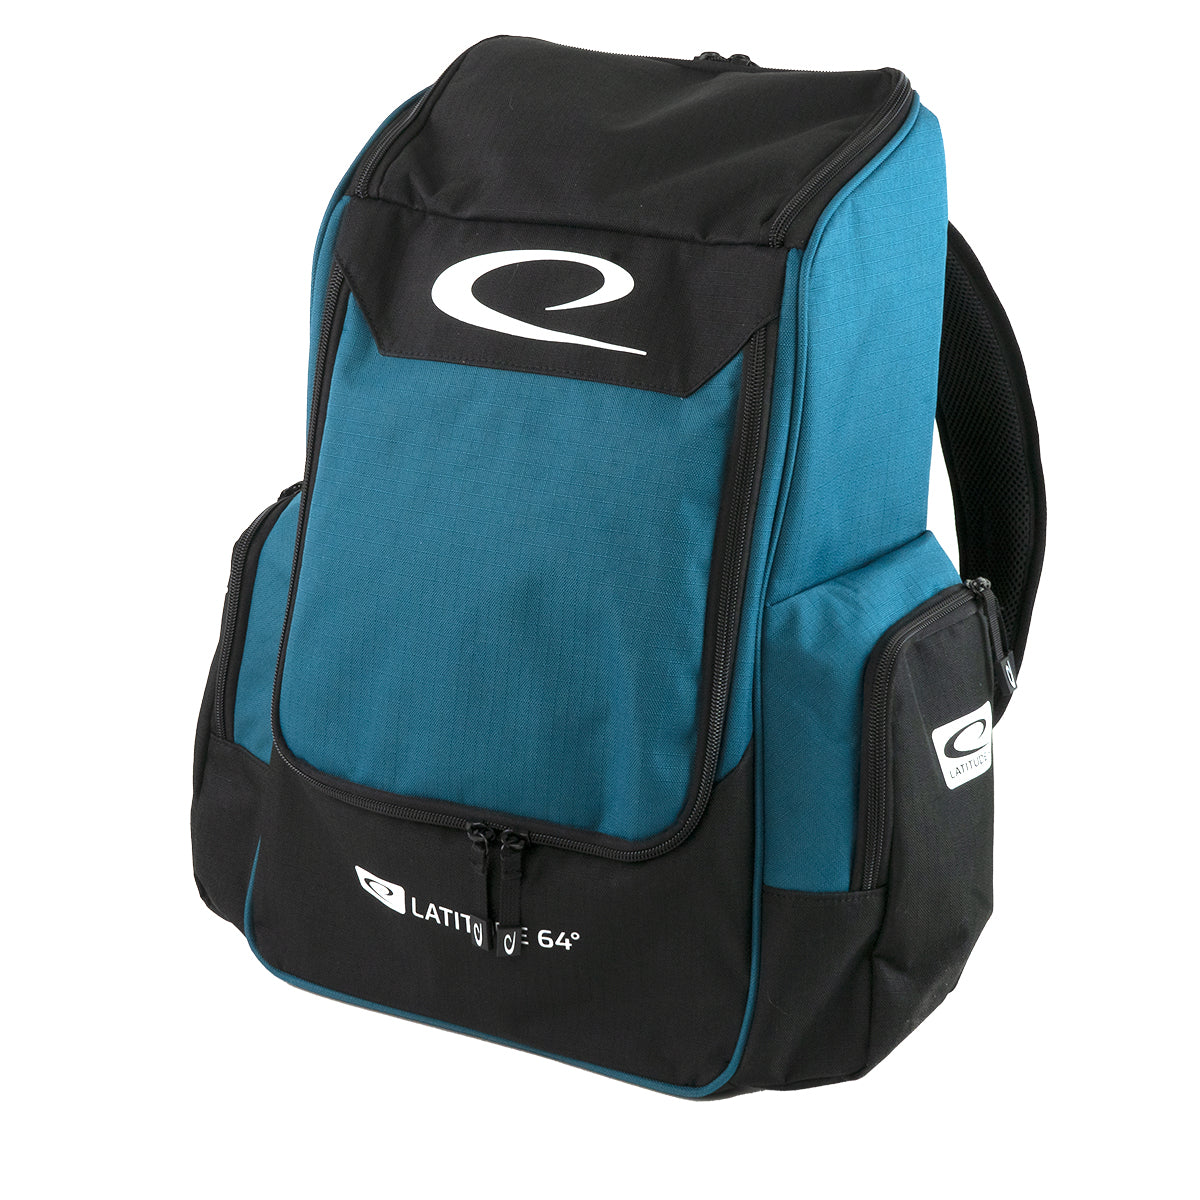 Latitude 64 Core Backpack